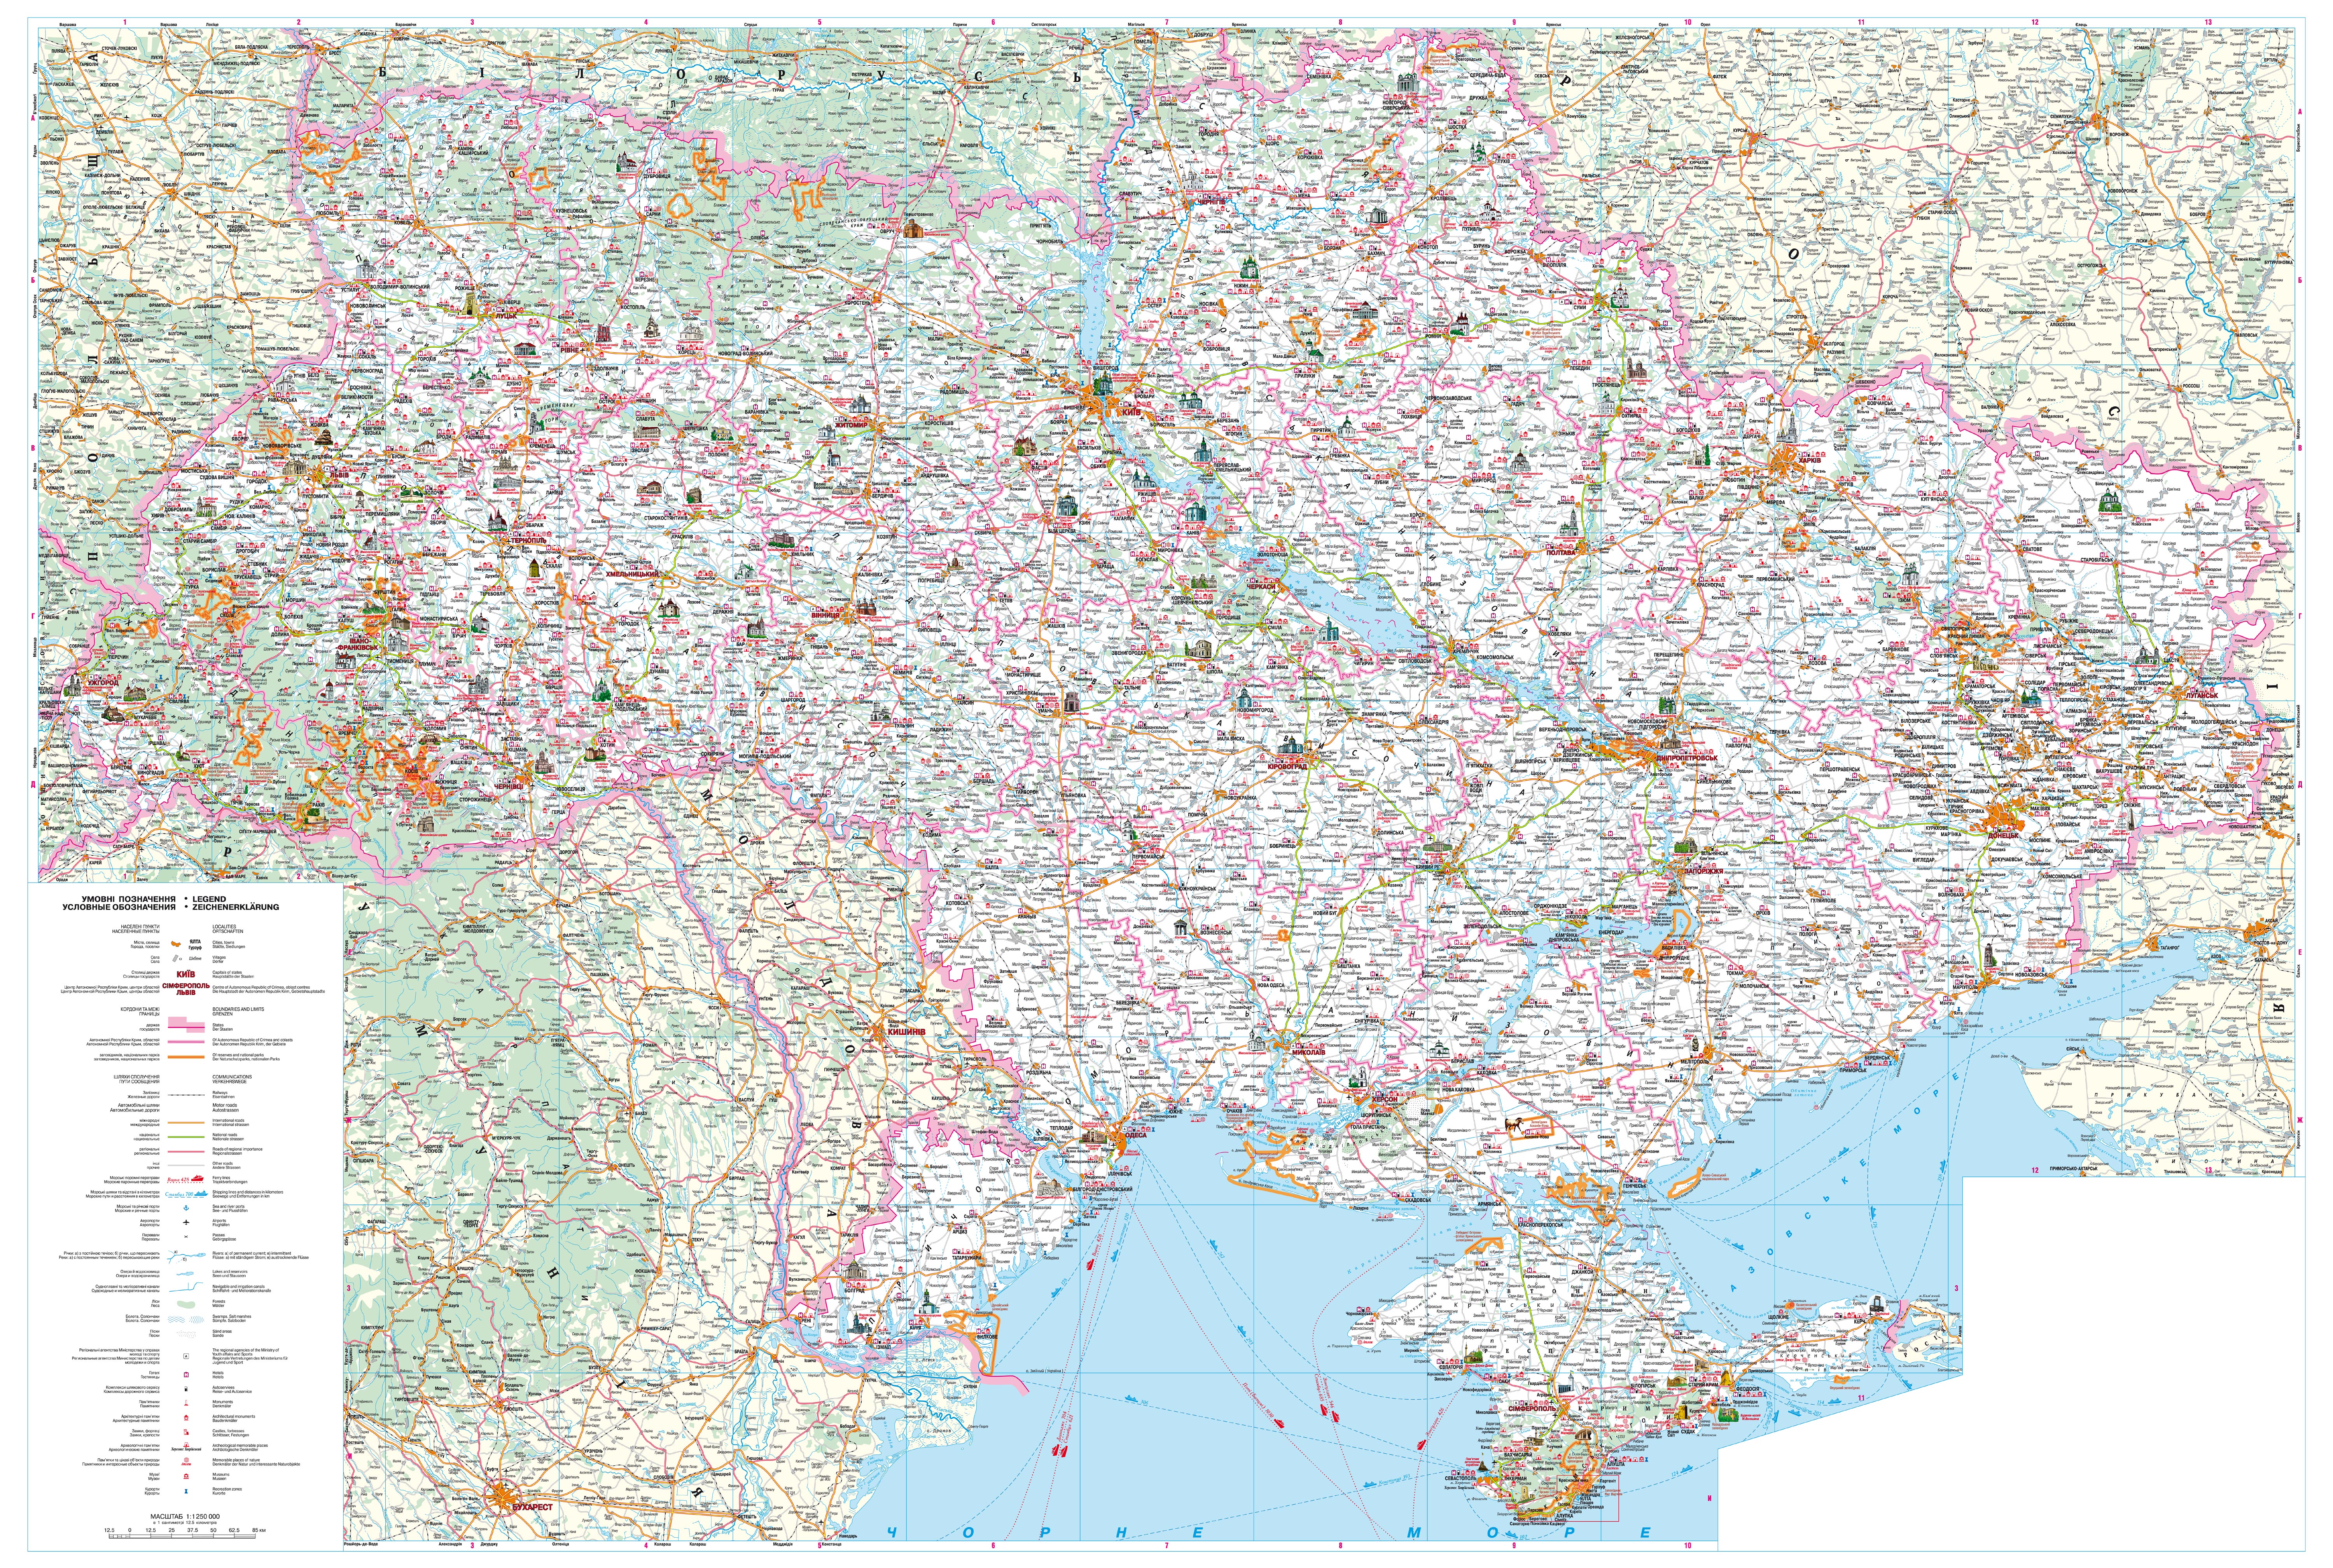 http://poehali.net/attach/ukraine_map.jpg